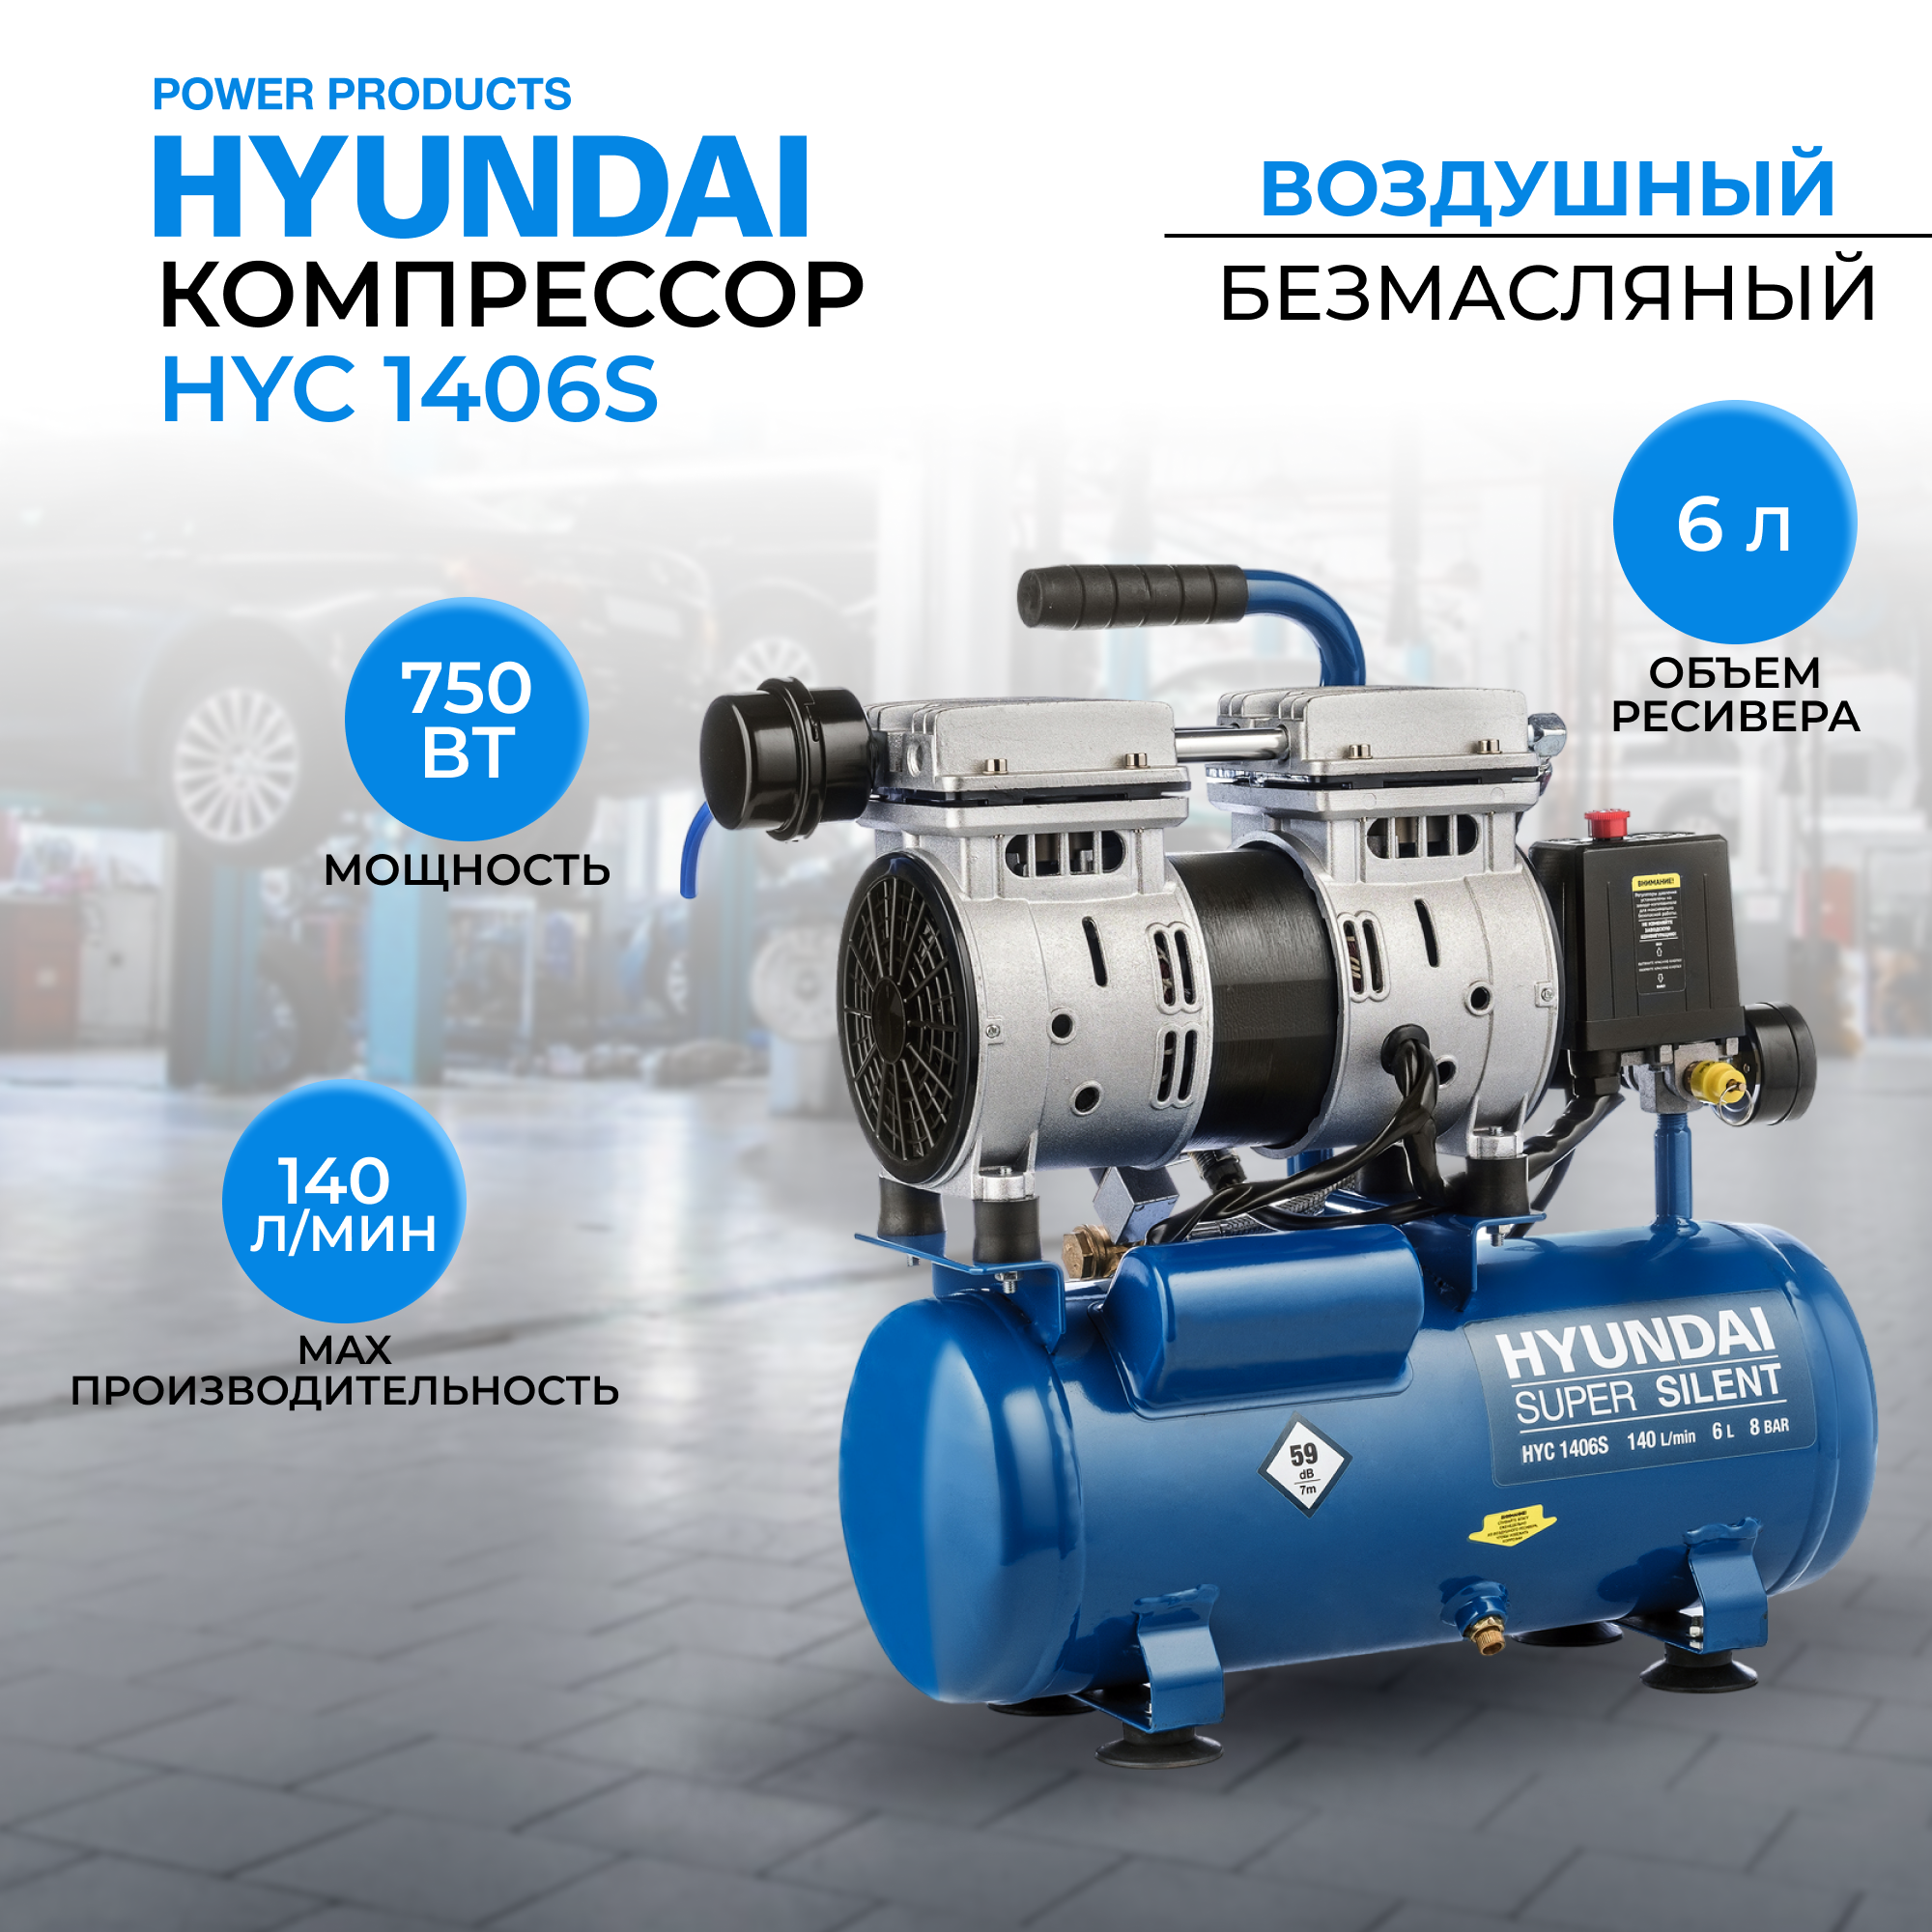 Воздушный поршневой компрессор Hyundai HYC 1406S безмасляный (140 л/мин, 750Вт, 8 бар) компрессор воздушный безмасляный энергомаш гарант вк1 100бмб